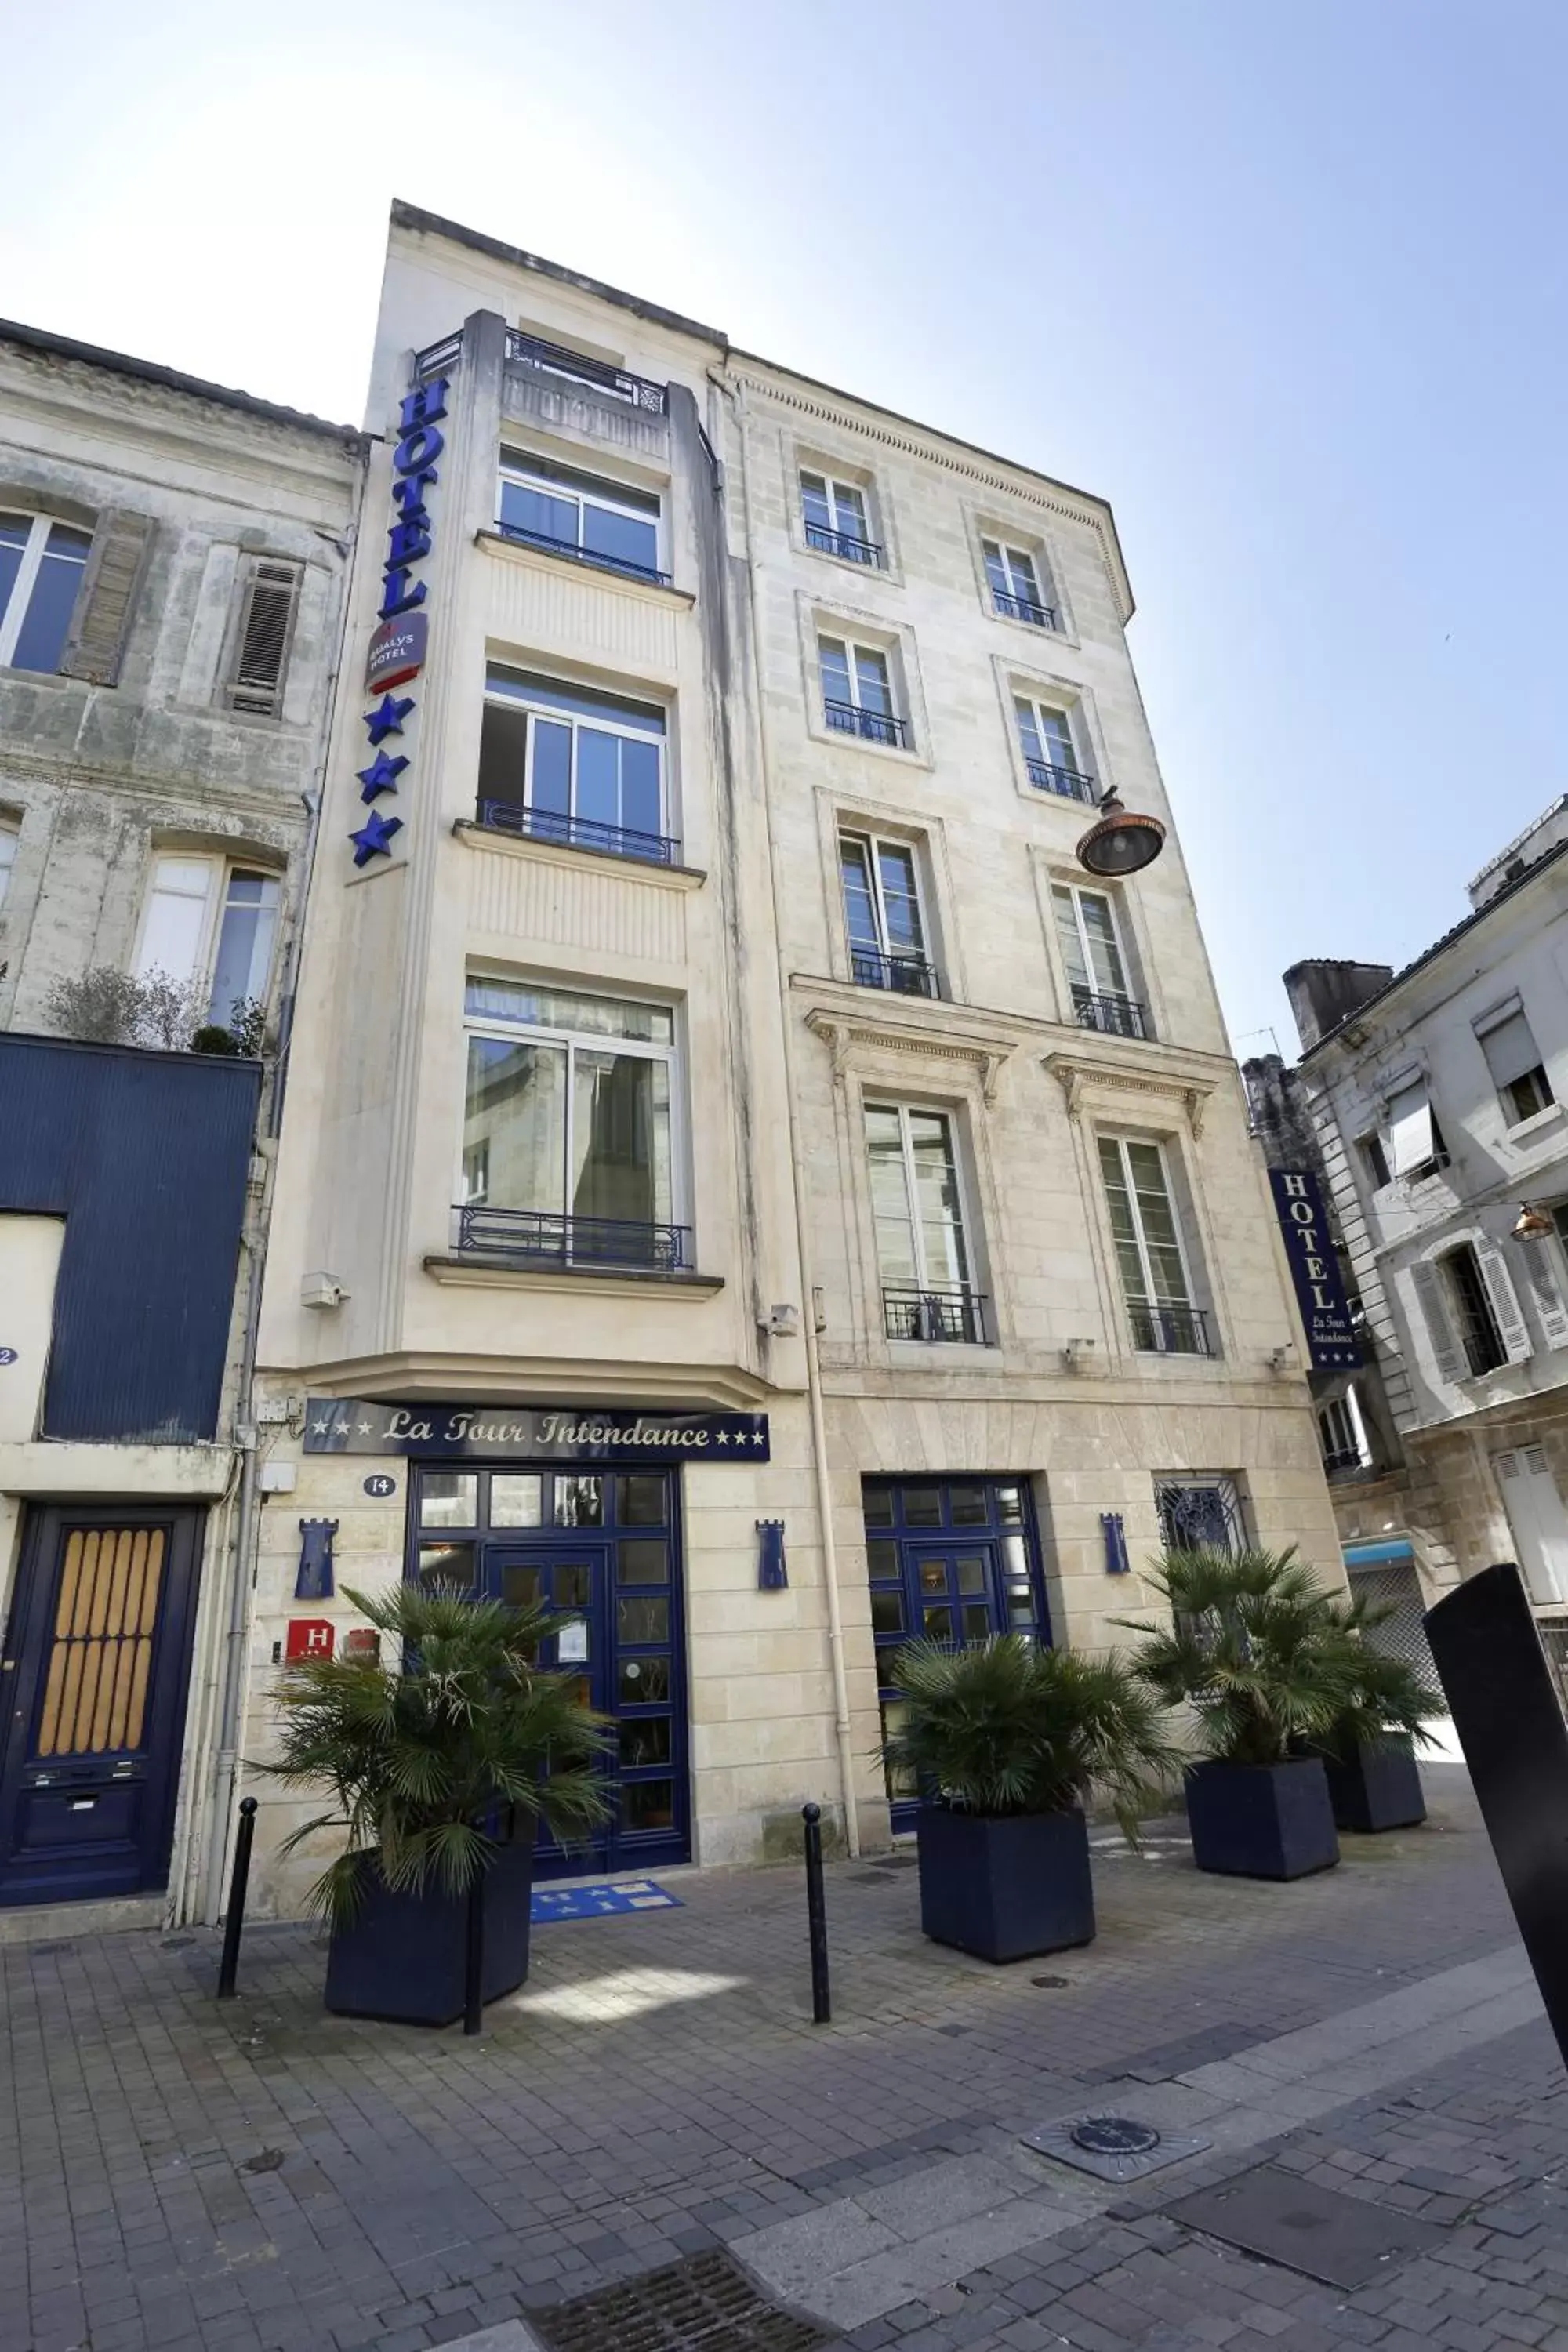 Facade/entrance, Property Building in Hôtel La Tour Intendance